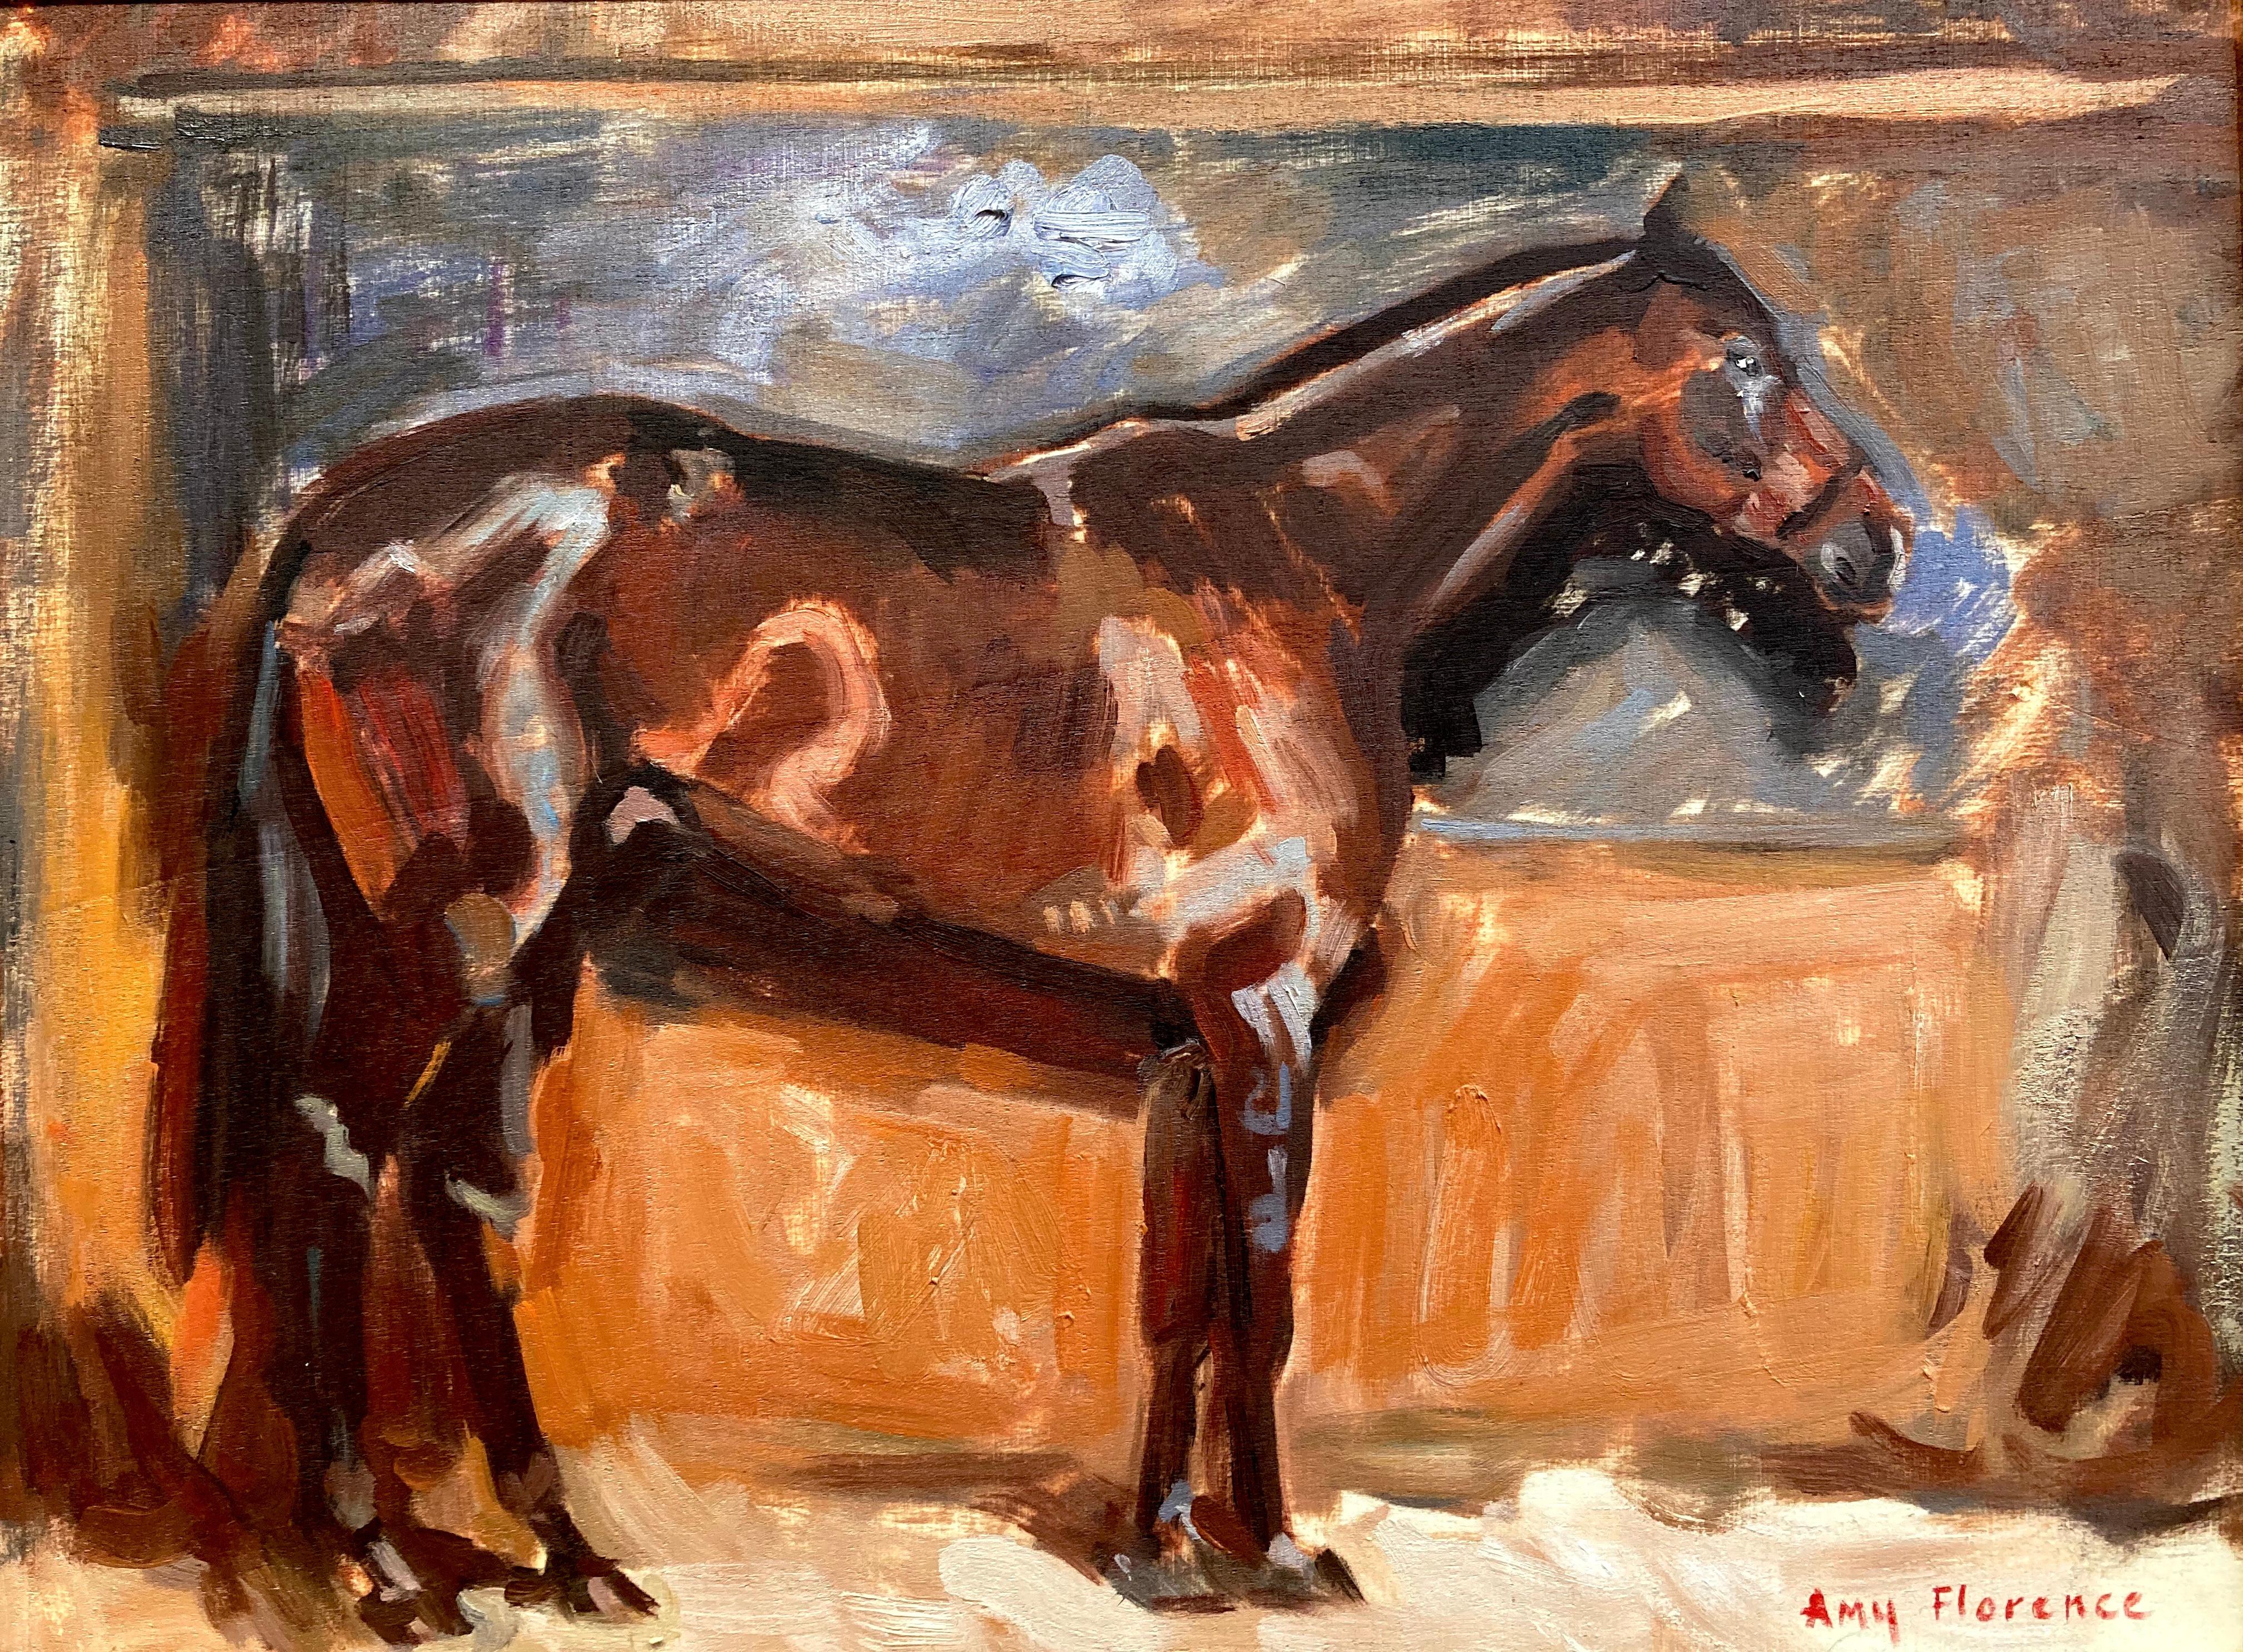 Amy Florence Animal Painting – "Pferdeskizze 1" Studie zu einem Gemälde von Alfred Munnings, Braun- und Erdtöne